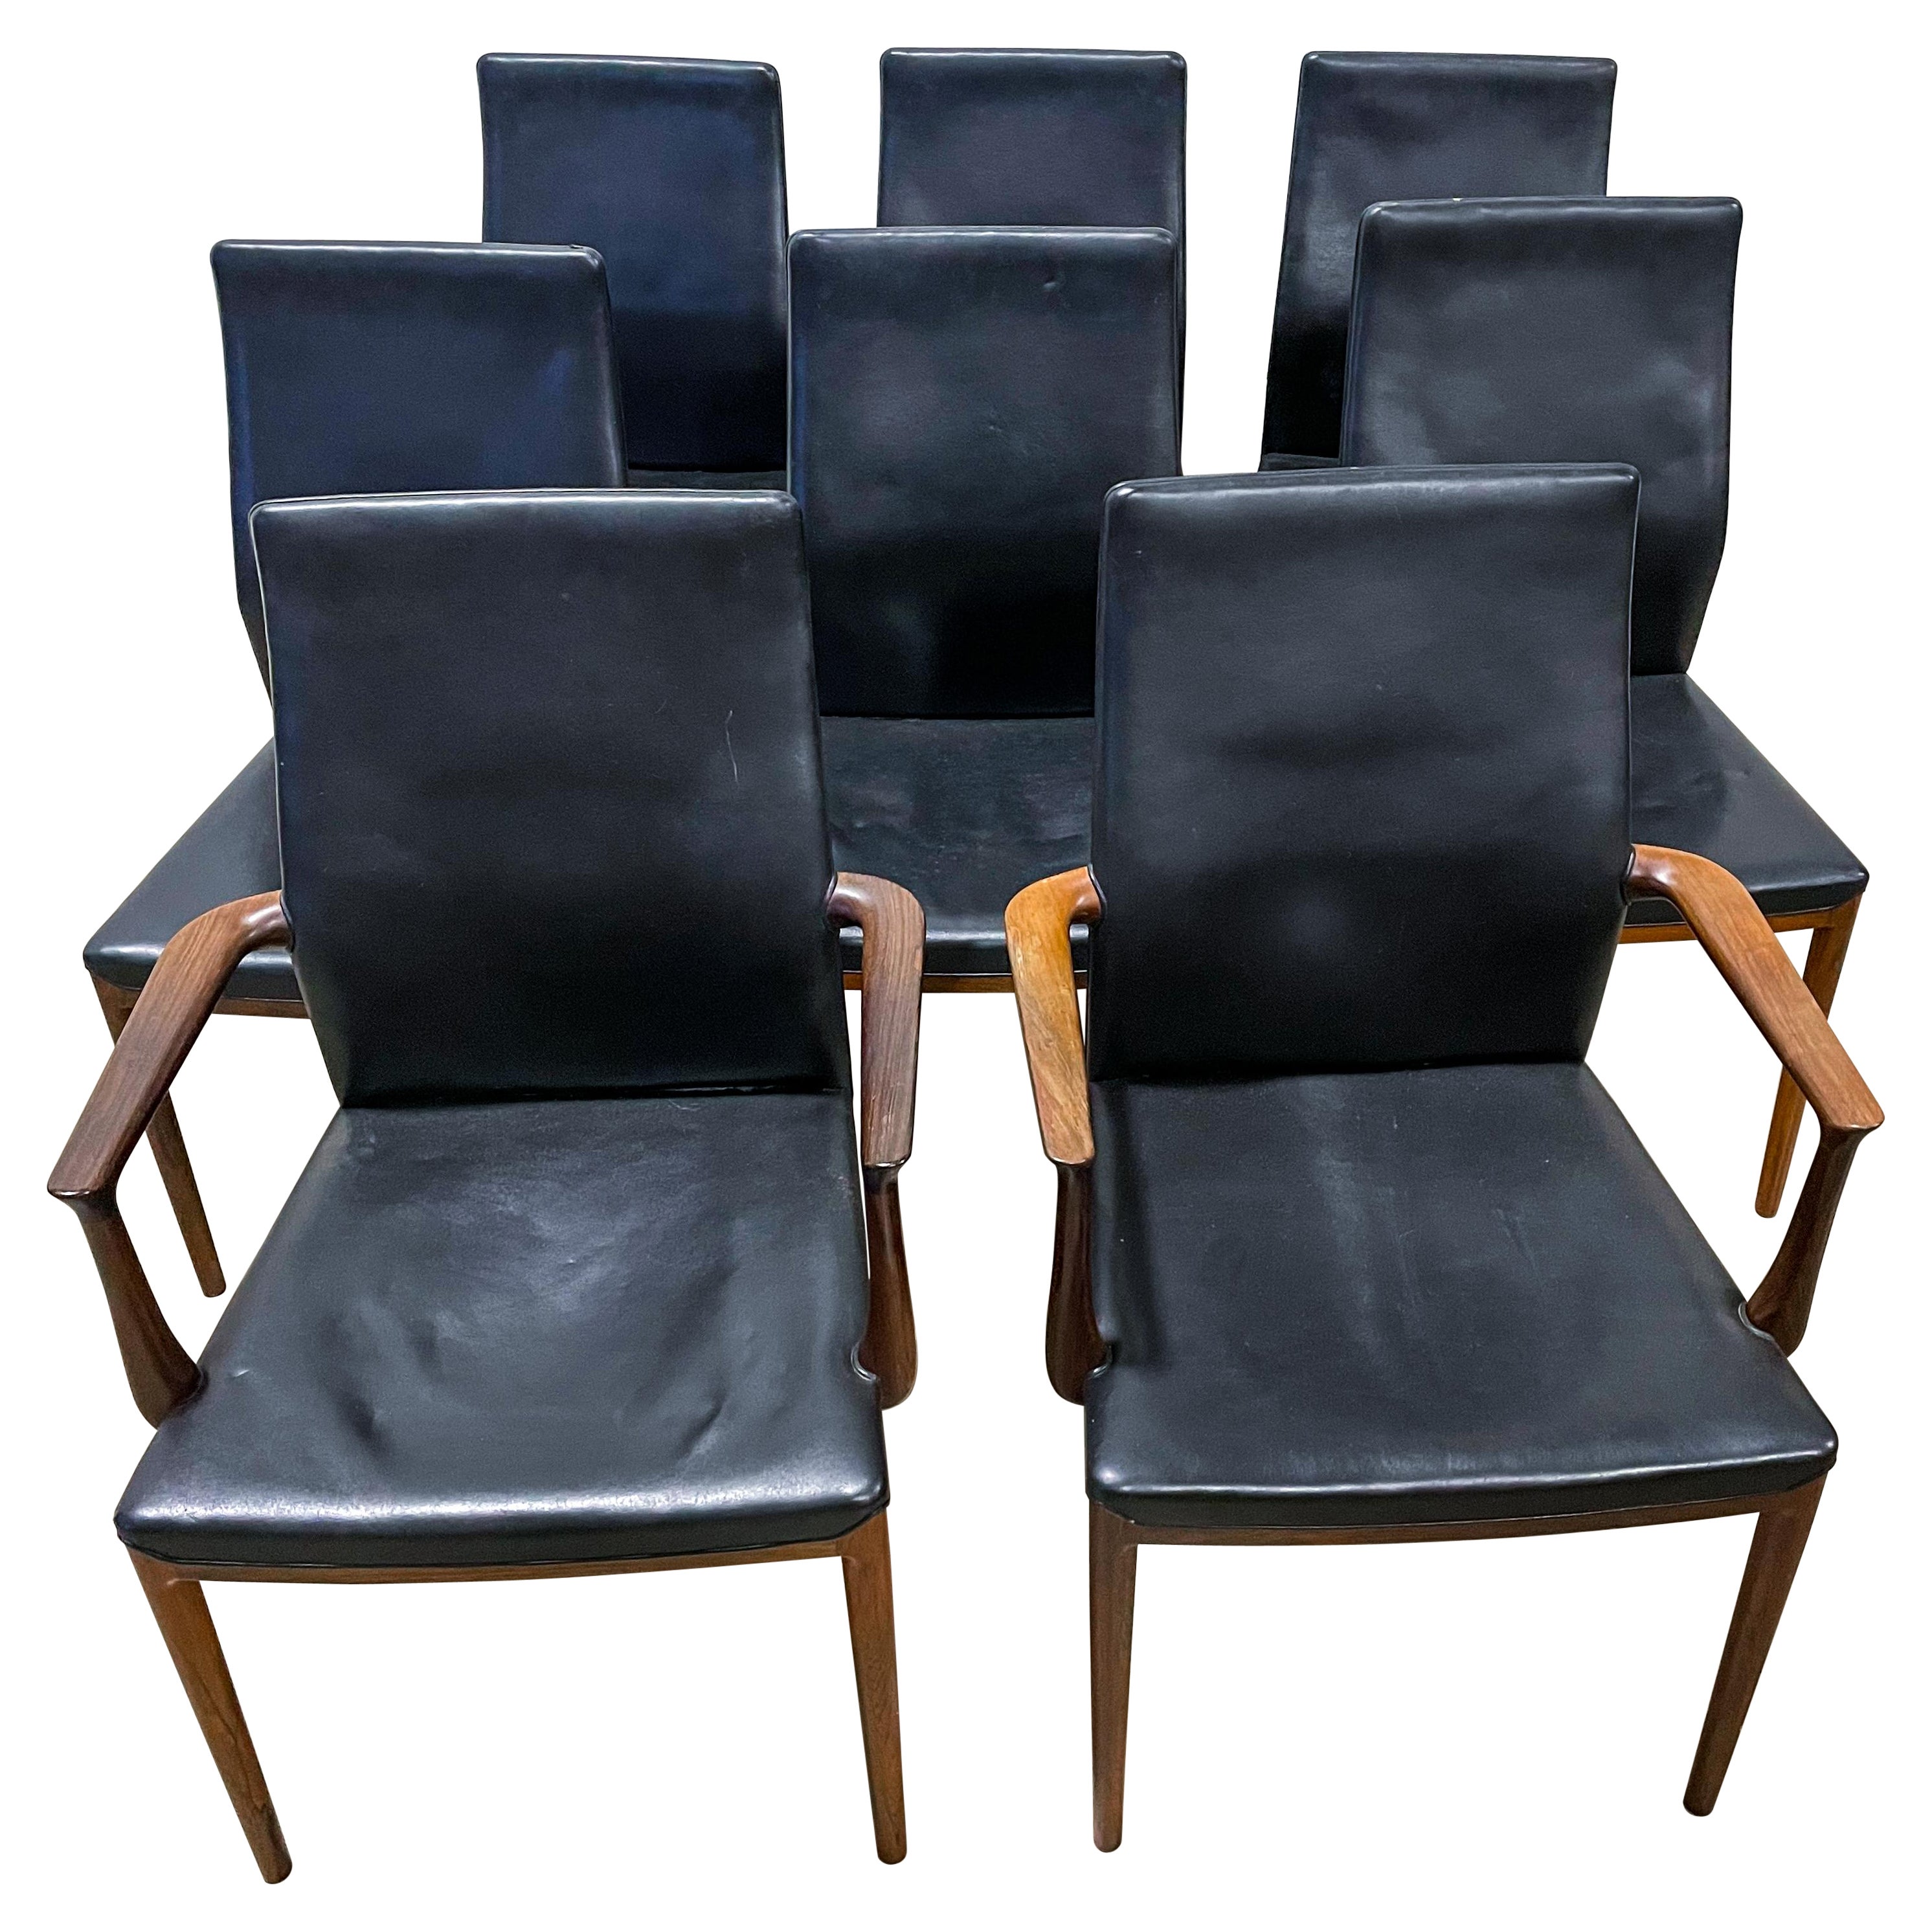 Très rares chaises de salle à manger en palissandre massif fabriquées par Soren Horn et conçues par Helge Vestergaard Jensen. Des accoudoirs superbement sculptés, des articulations sans faille et un excellent travail du cuir font de ces fauteuils